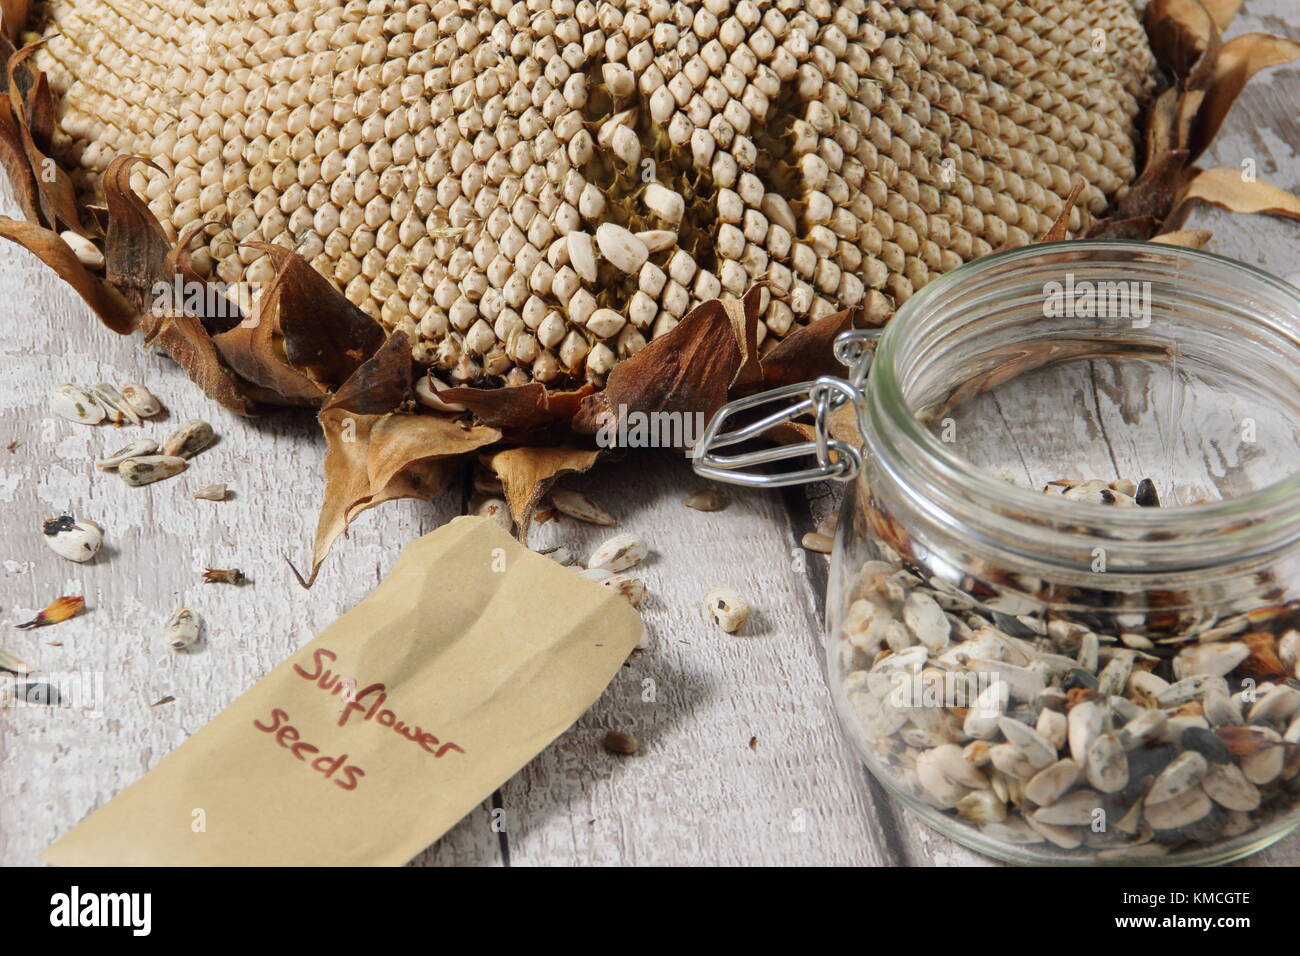 Les graines de tournesol sont récoltées à partir de la tête de l'Helianthus 'tournesol' géant russe, certains pour la replantation et certains pour des aliments pour oiseaux, UK Banque D'Images